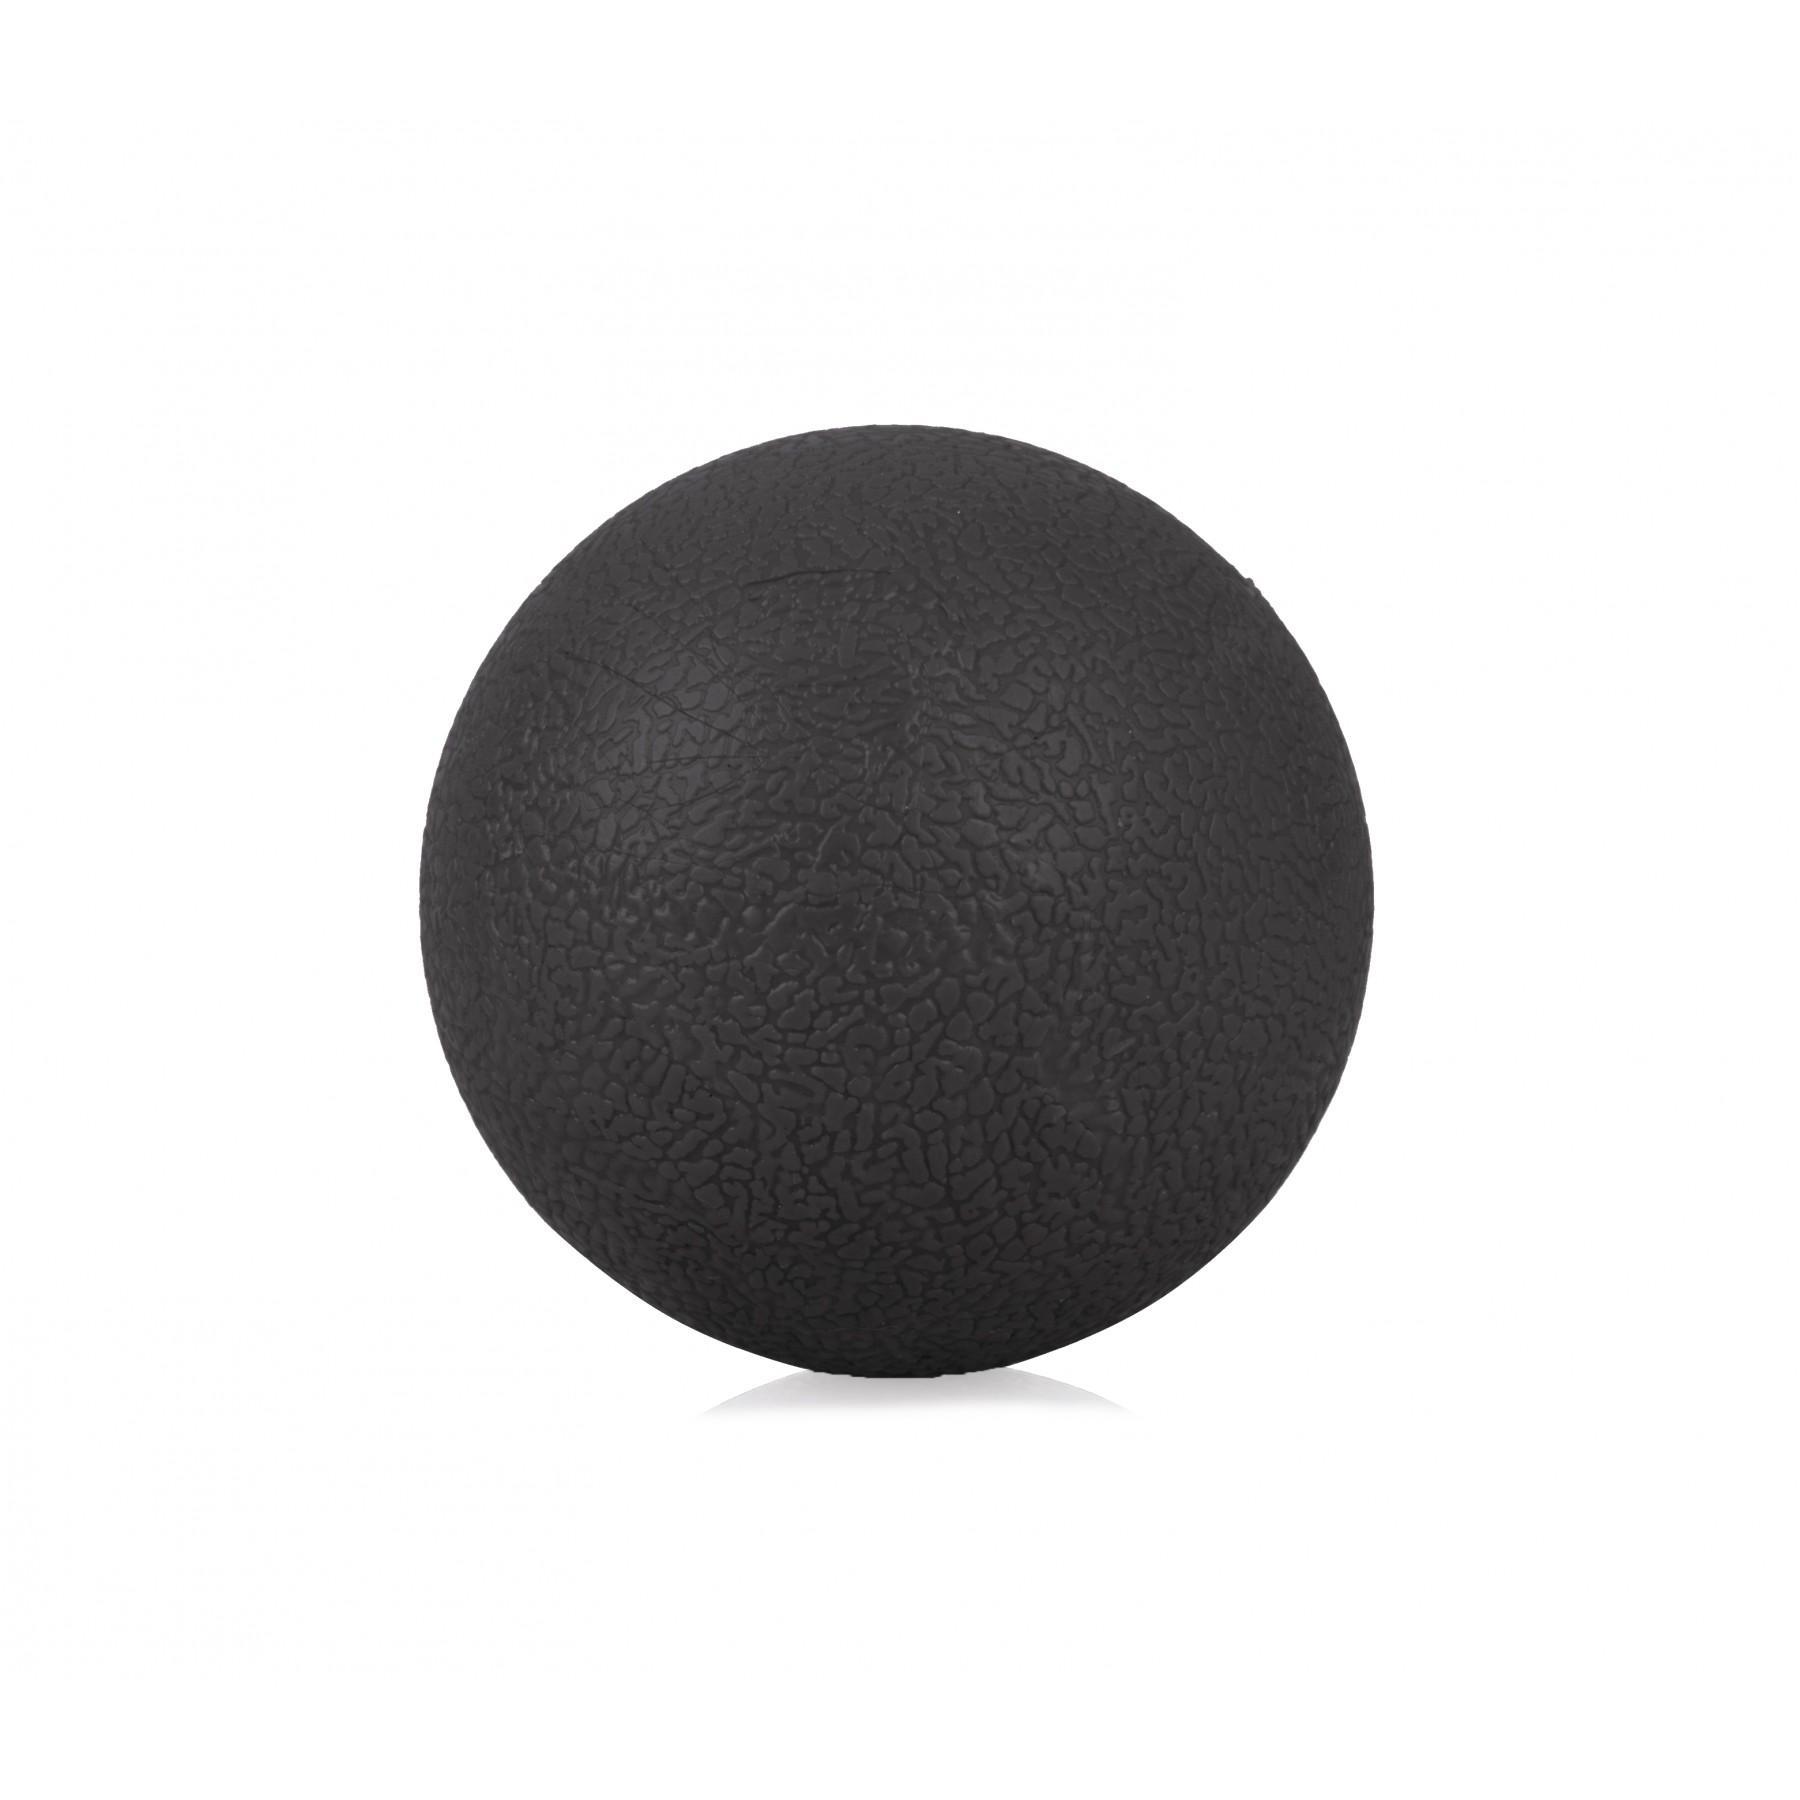 Масажний м'яч Majestic Sport Mono Ball 6 см GVS5022/K